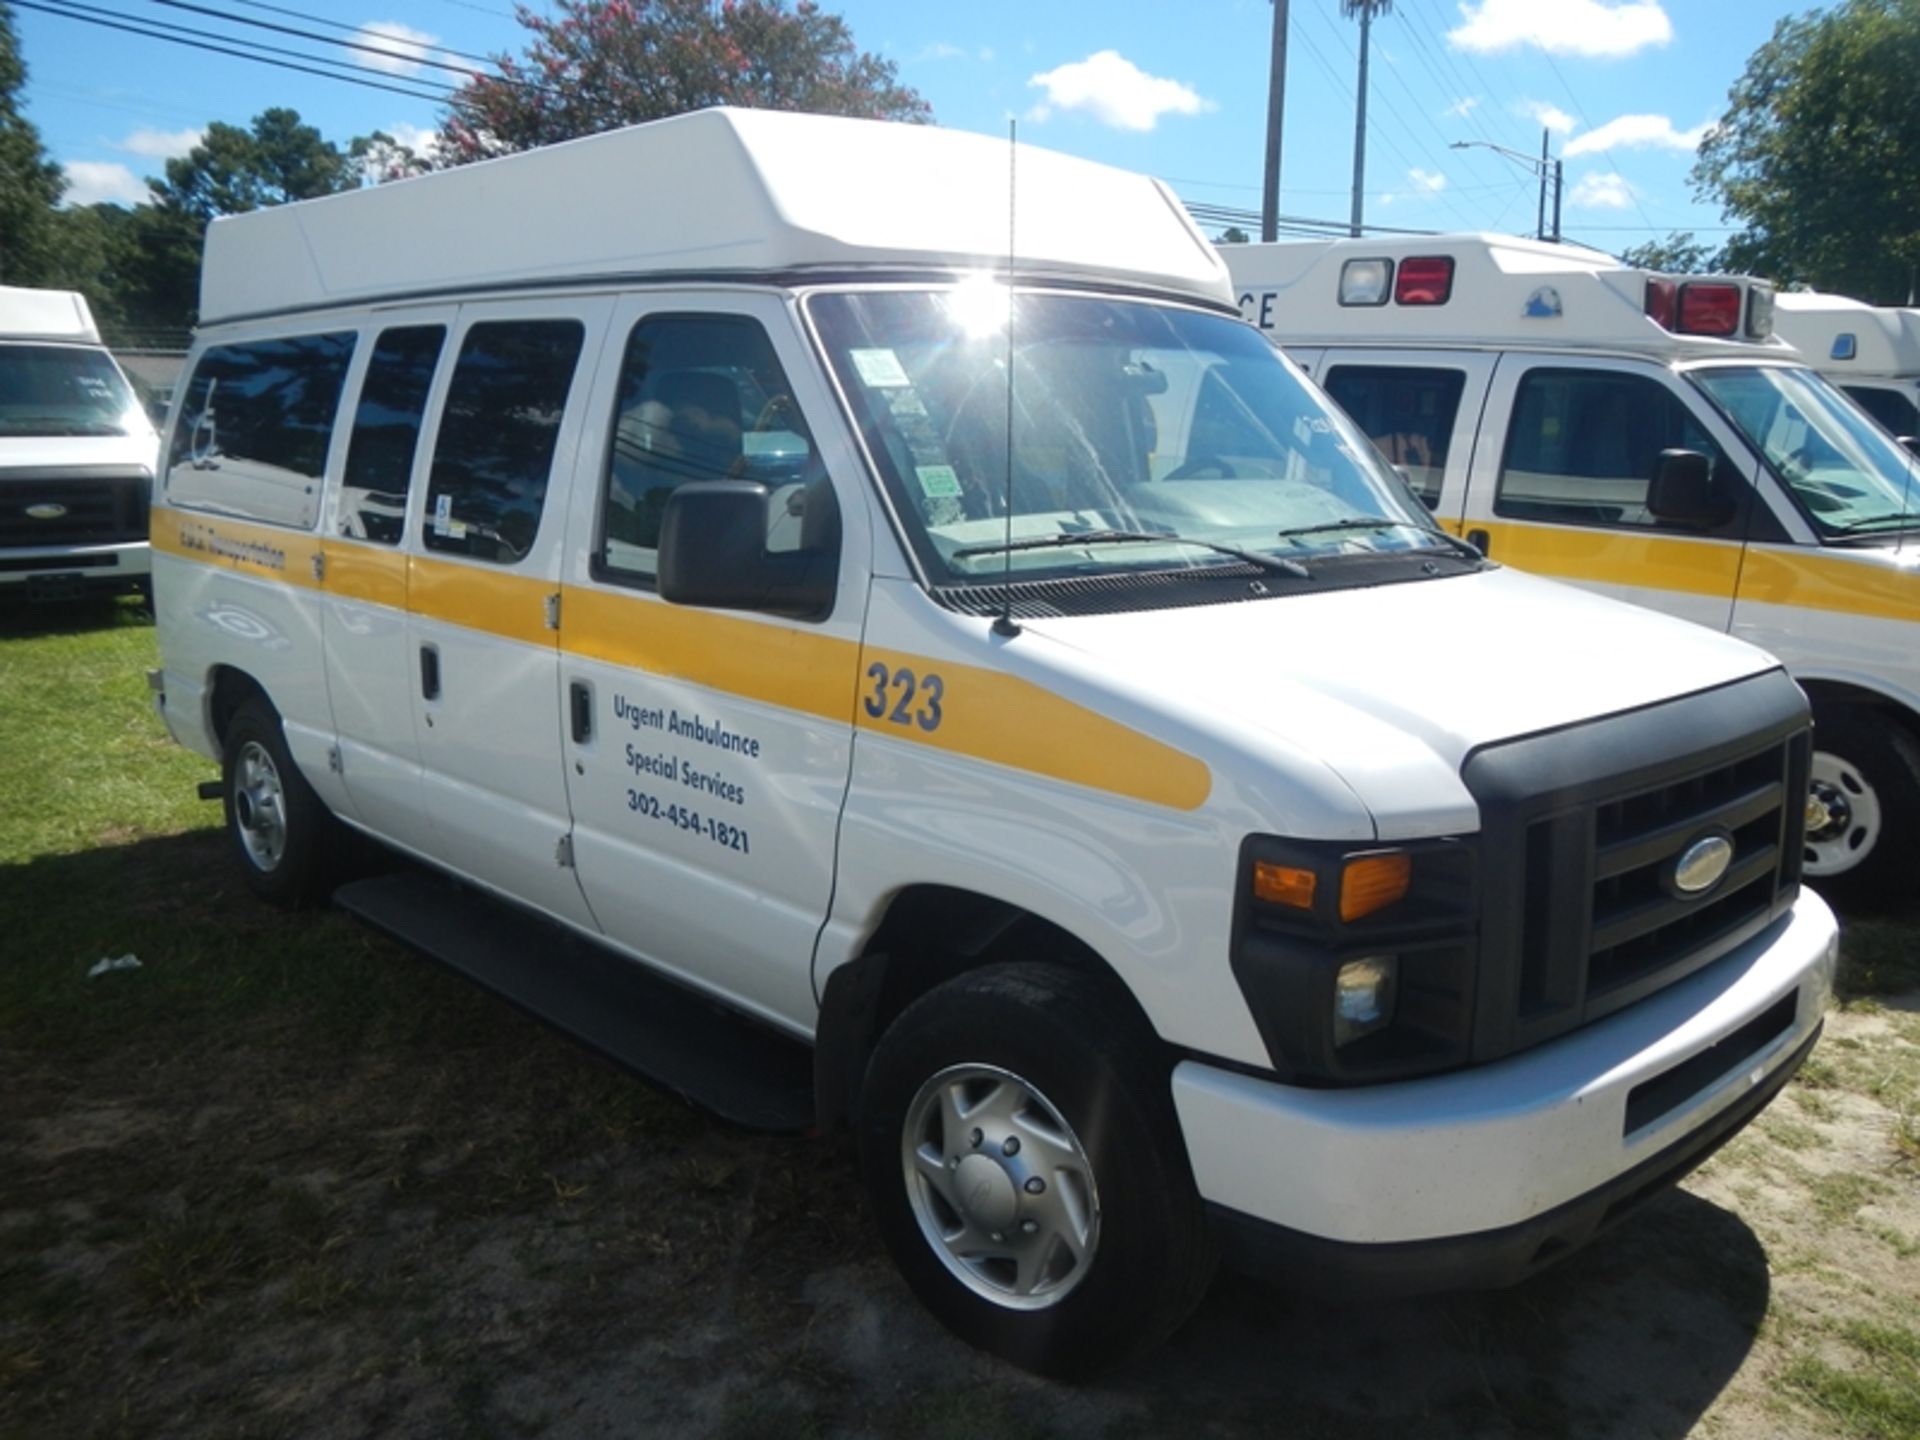 2014 FORD E-150 wheelchair van, gas 182,328 miles - VIN: 1FTNE1EW5EDA97514 - Image 2 of 7